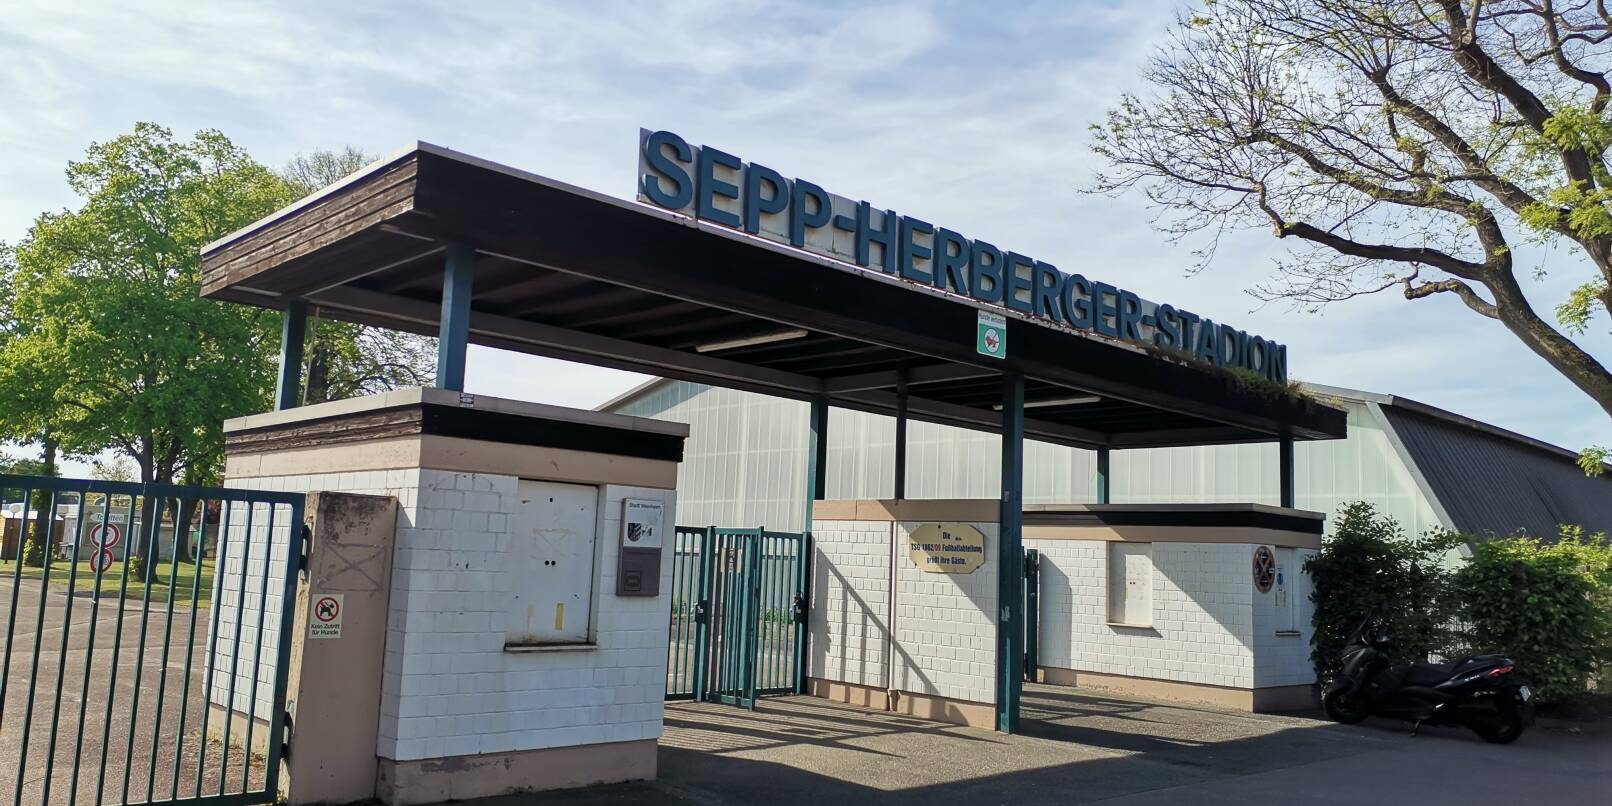 Im Sepp-Herberger-Stadion werden künftig sowohl die TSG 62/09 Weinheim als auch der SG United ihre Heimspiele austragen.